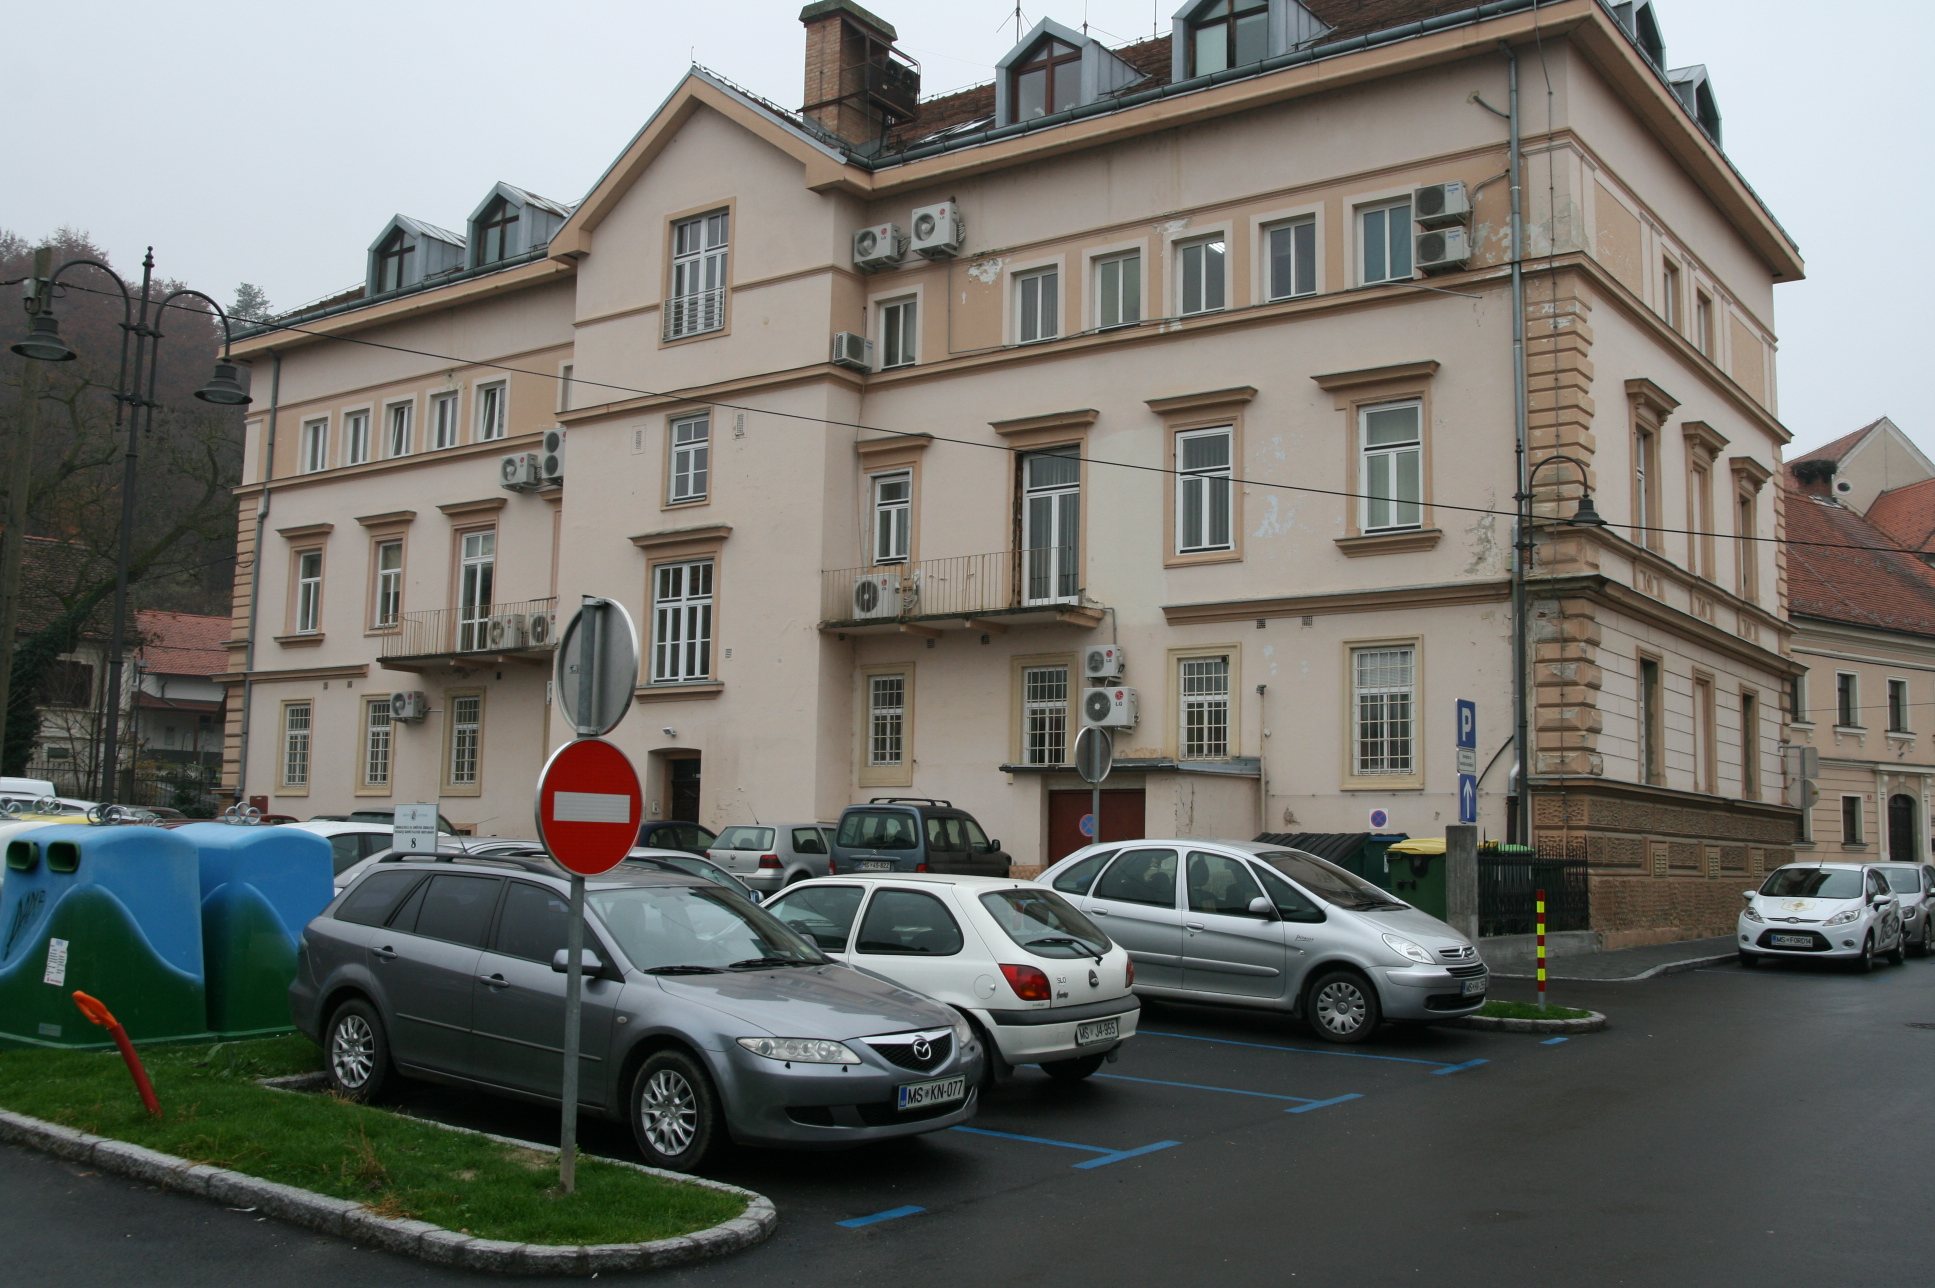  Za občinsko zgradbo v Ljutomeru so tudi parkirišča za stranke.